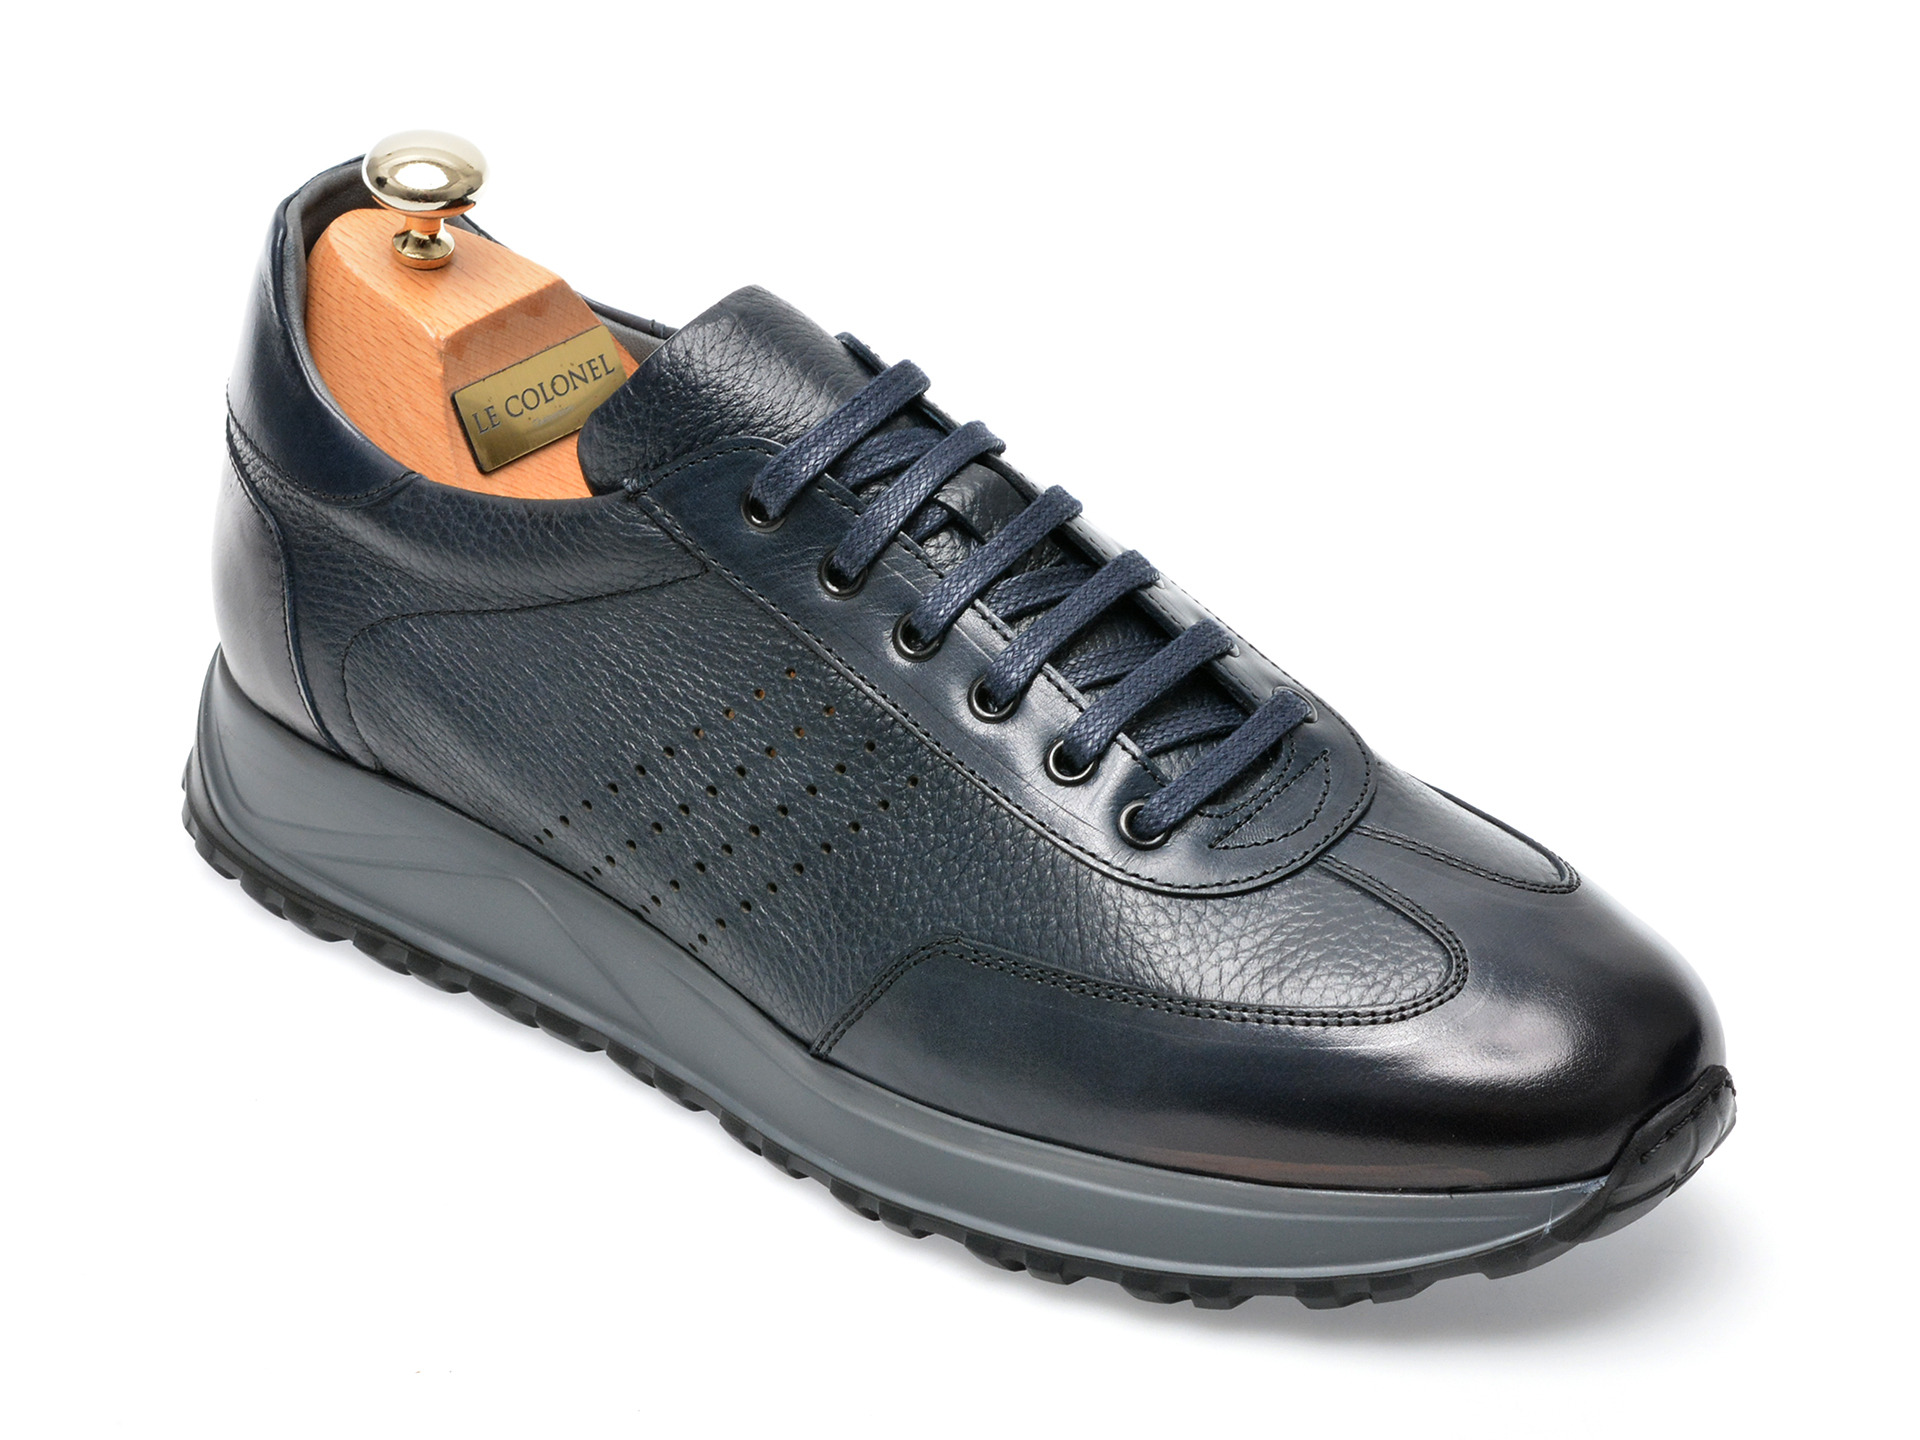 Poze Pantofi LE COLONEL bleumarin, 62818, din piele naturala Tezyo